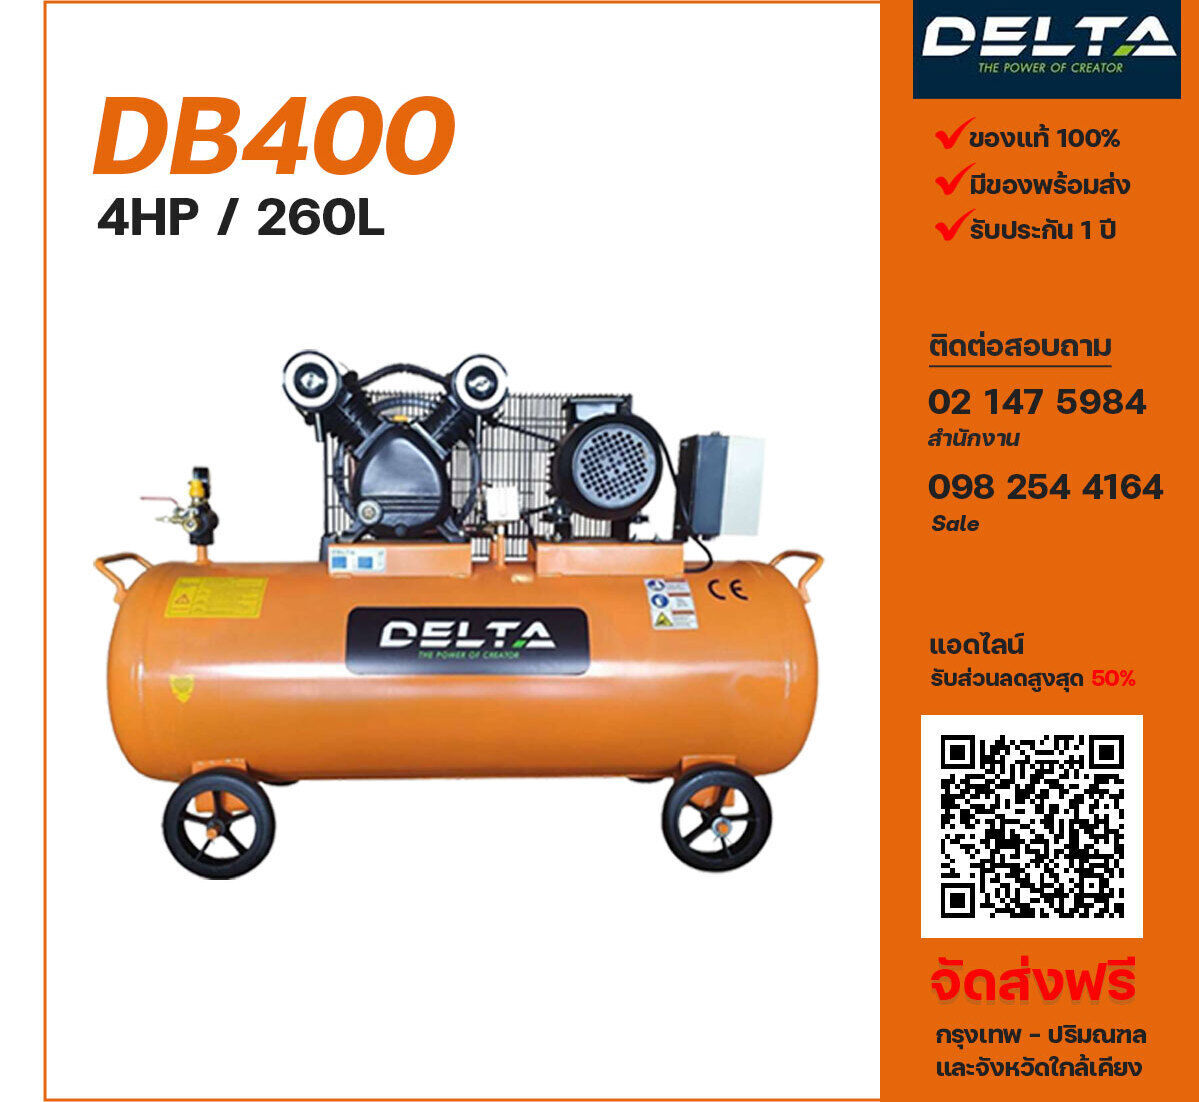 ปั๊มลมเดลต้า DELTA DB400 220V/380V ปั๊มลมลูกสูบ ขนาด 2 สูบ 4 แรงม้า 260 ลิตร DELTA พร้อมมอเตอร์ ไฟ 220V/380V ส่งฟรี กรุงเทพฯ-ปริมณฑล รับประกัน 1 ปี